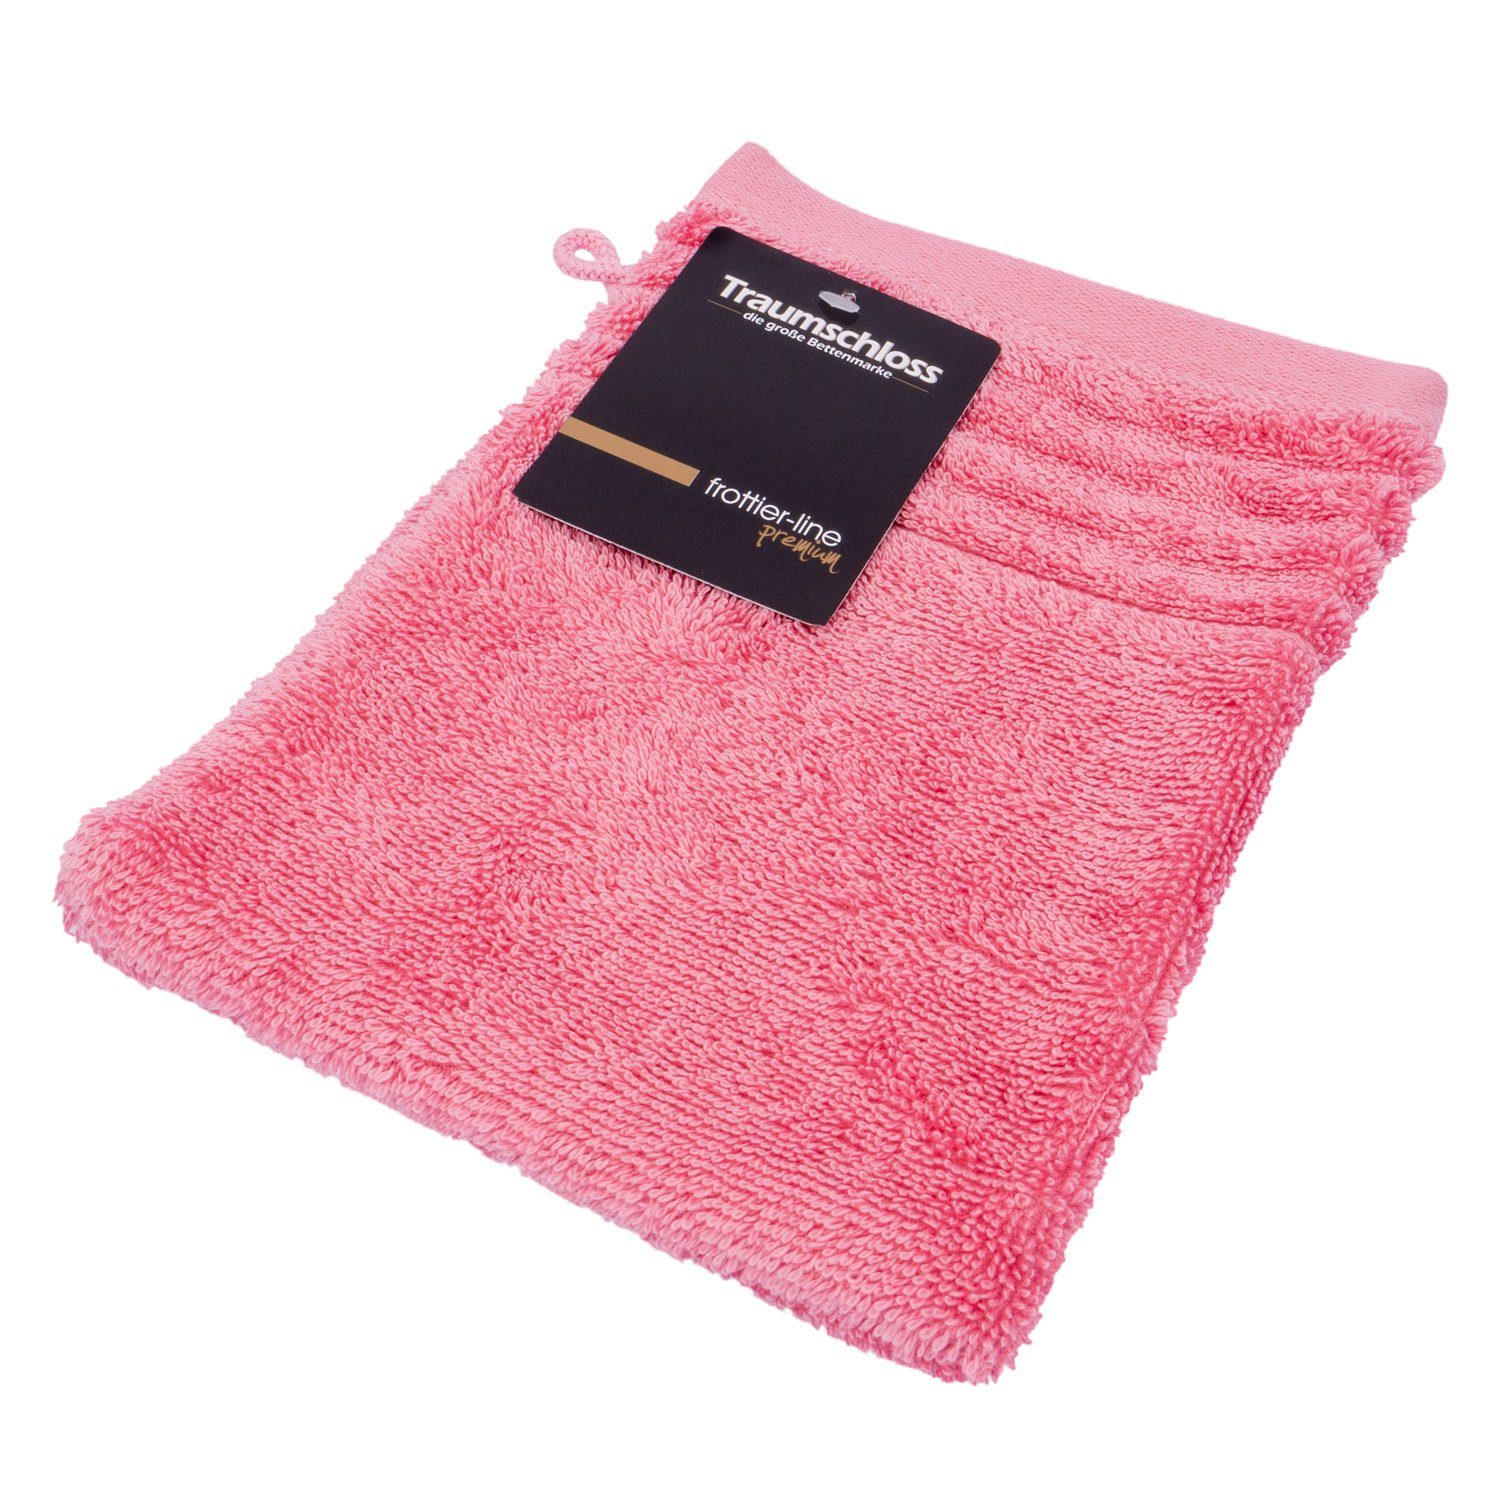 Traumschloss Waschlappen Premium-Line (1-tlg), 100% amerikanische 600g/m² pink Baumwolle mit Supima